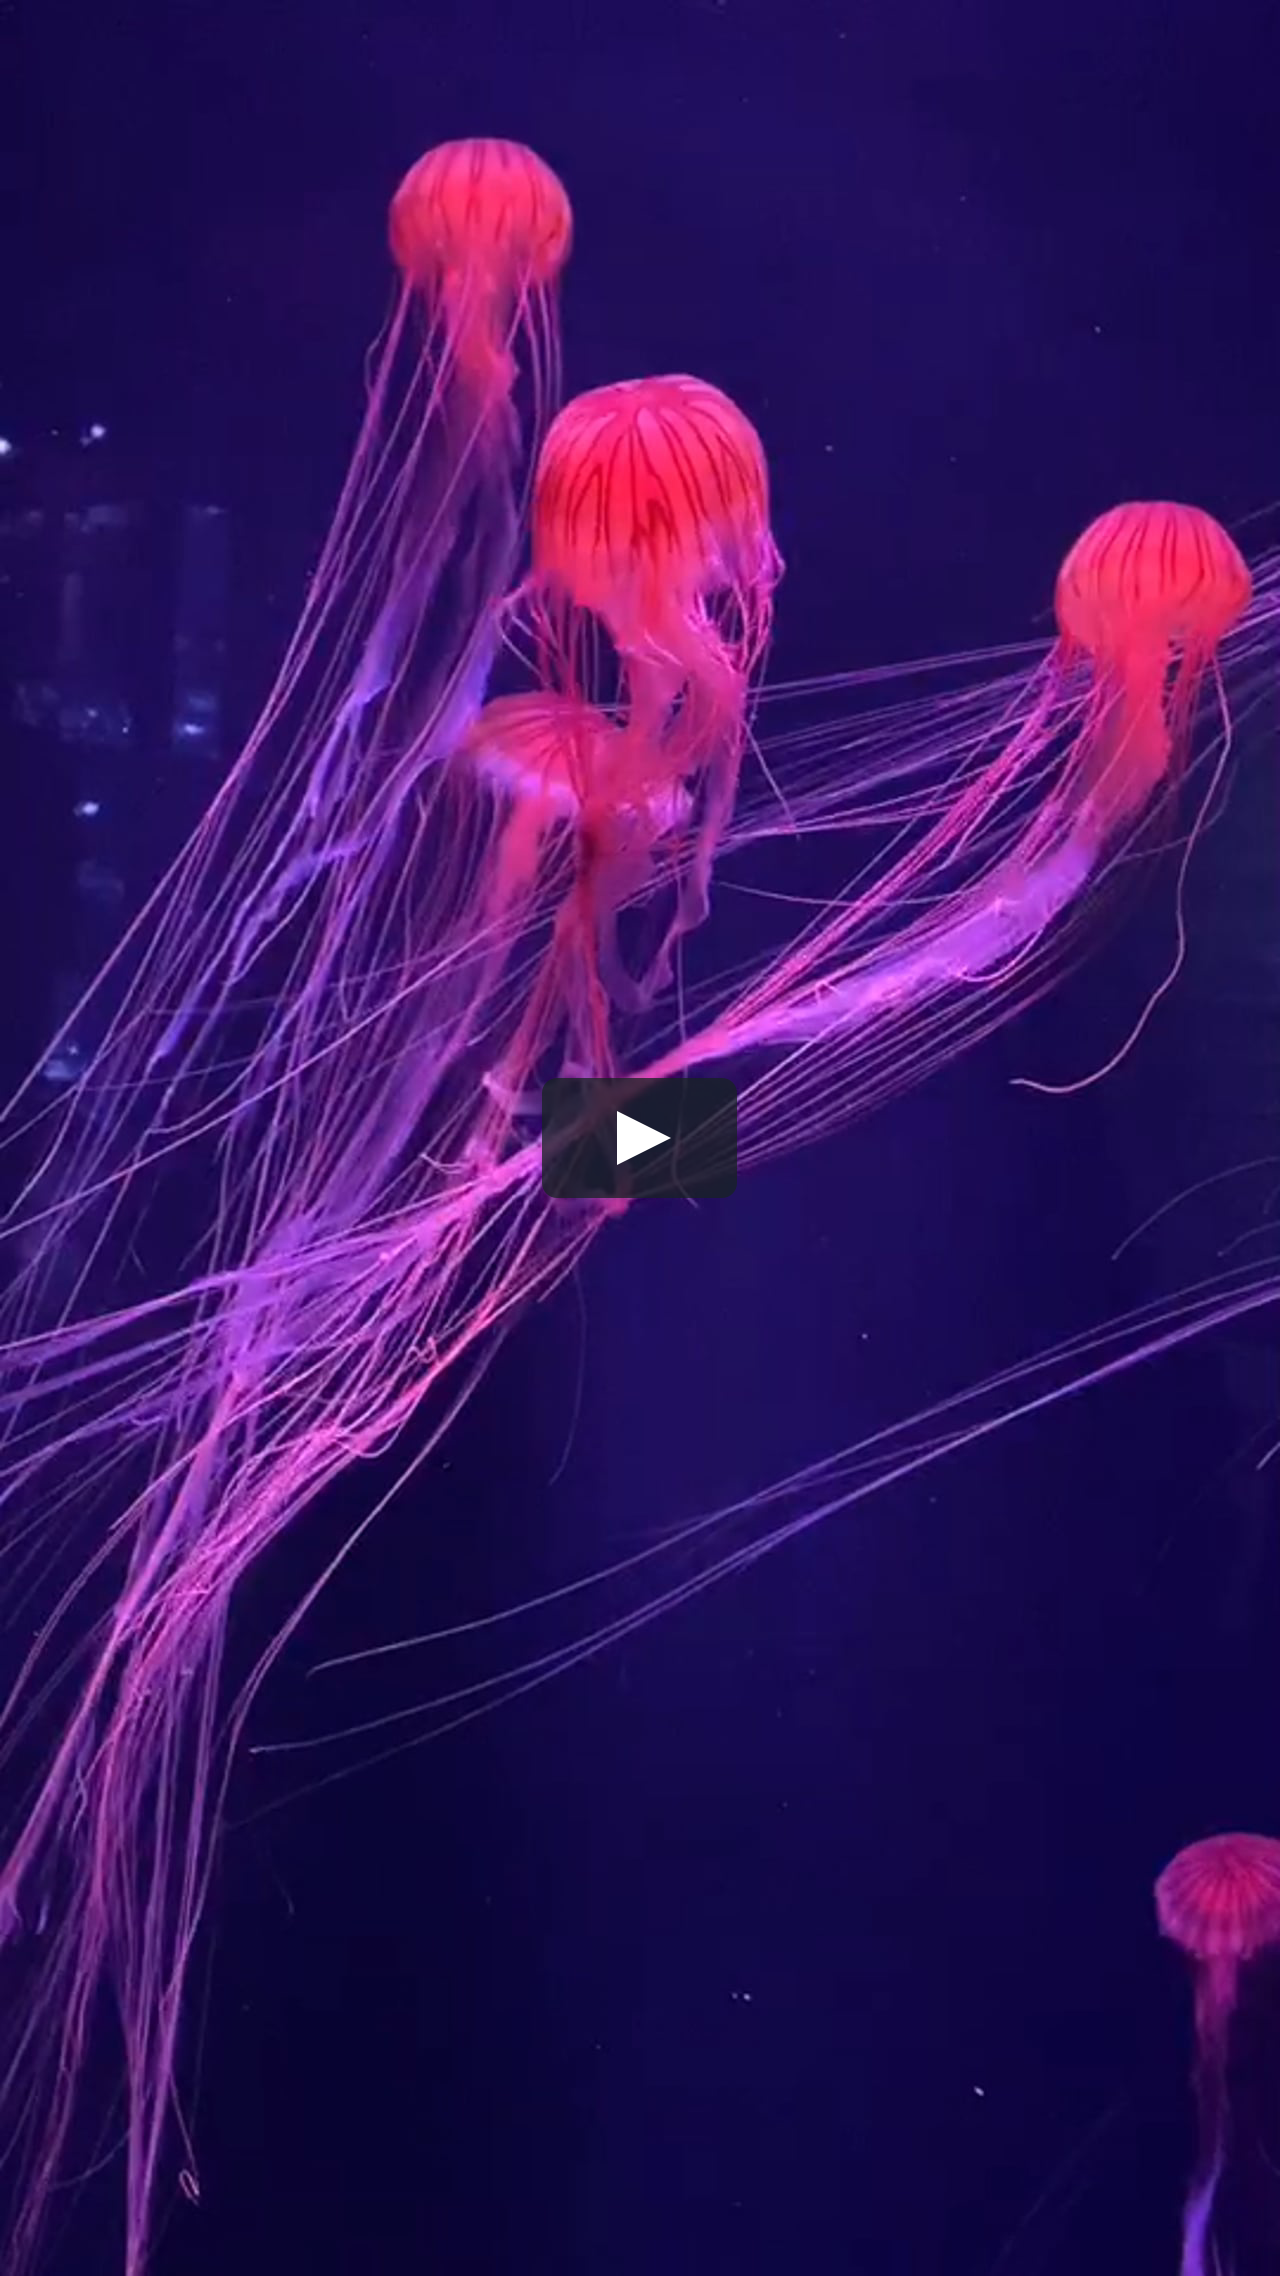 新田悠守気のvlog 珍しいピンクのクラゲ On Vimeo